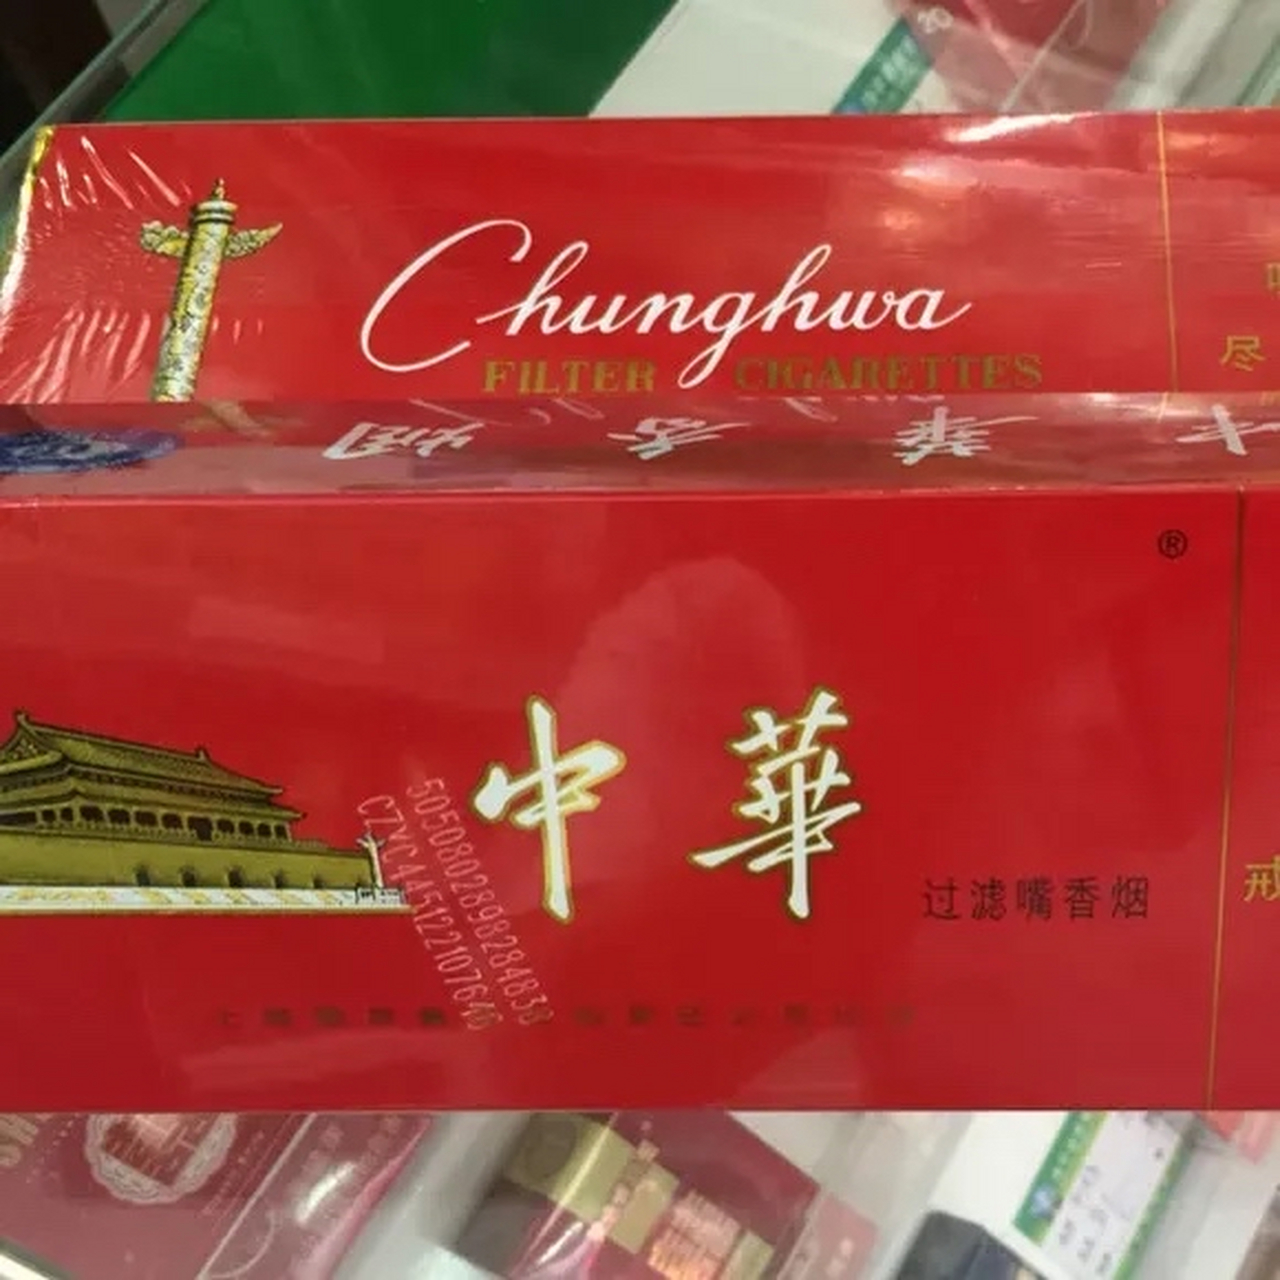 重庆,男子在酒店以每条1280元的单价买了2条中华烟,但他事后查到规定